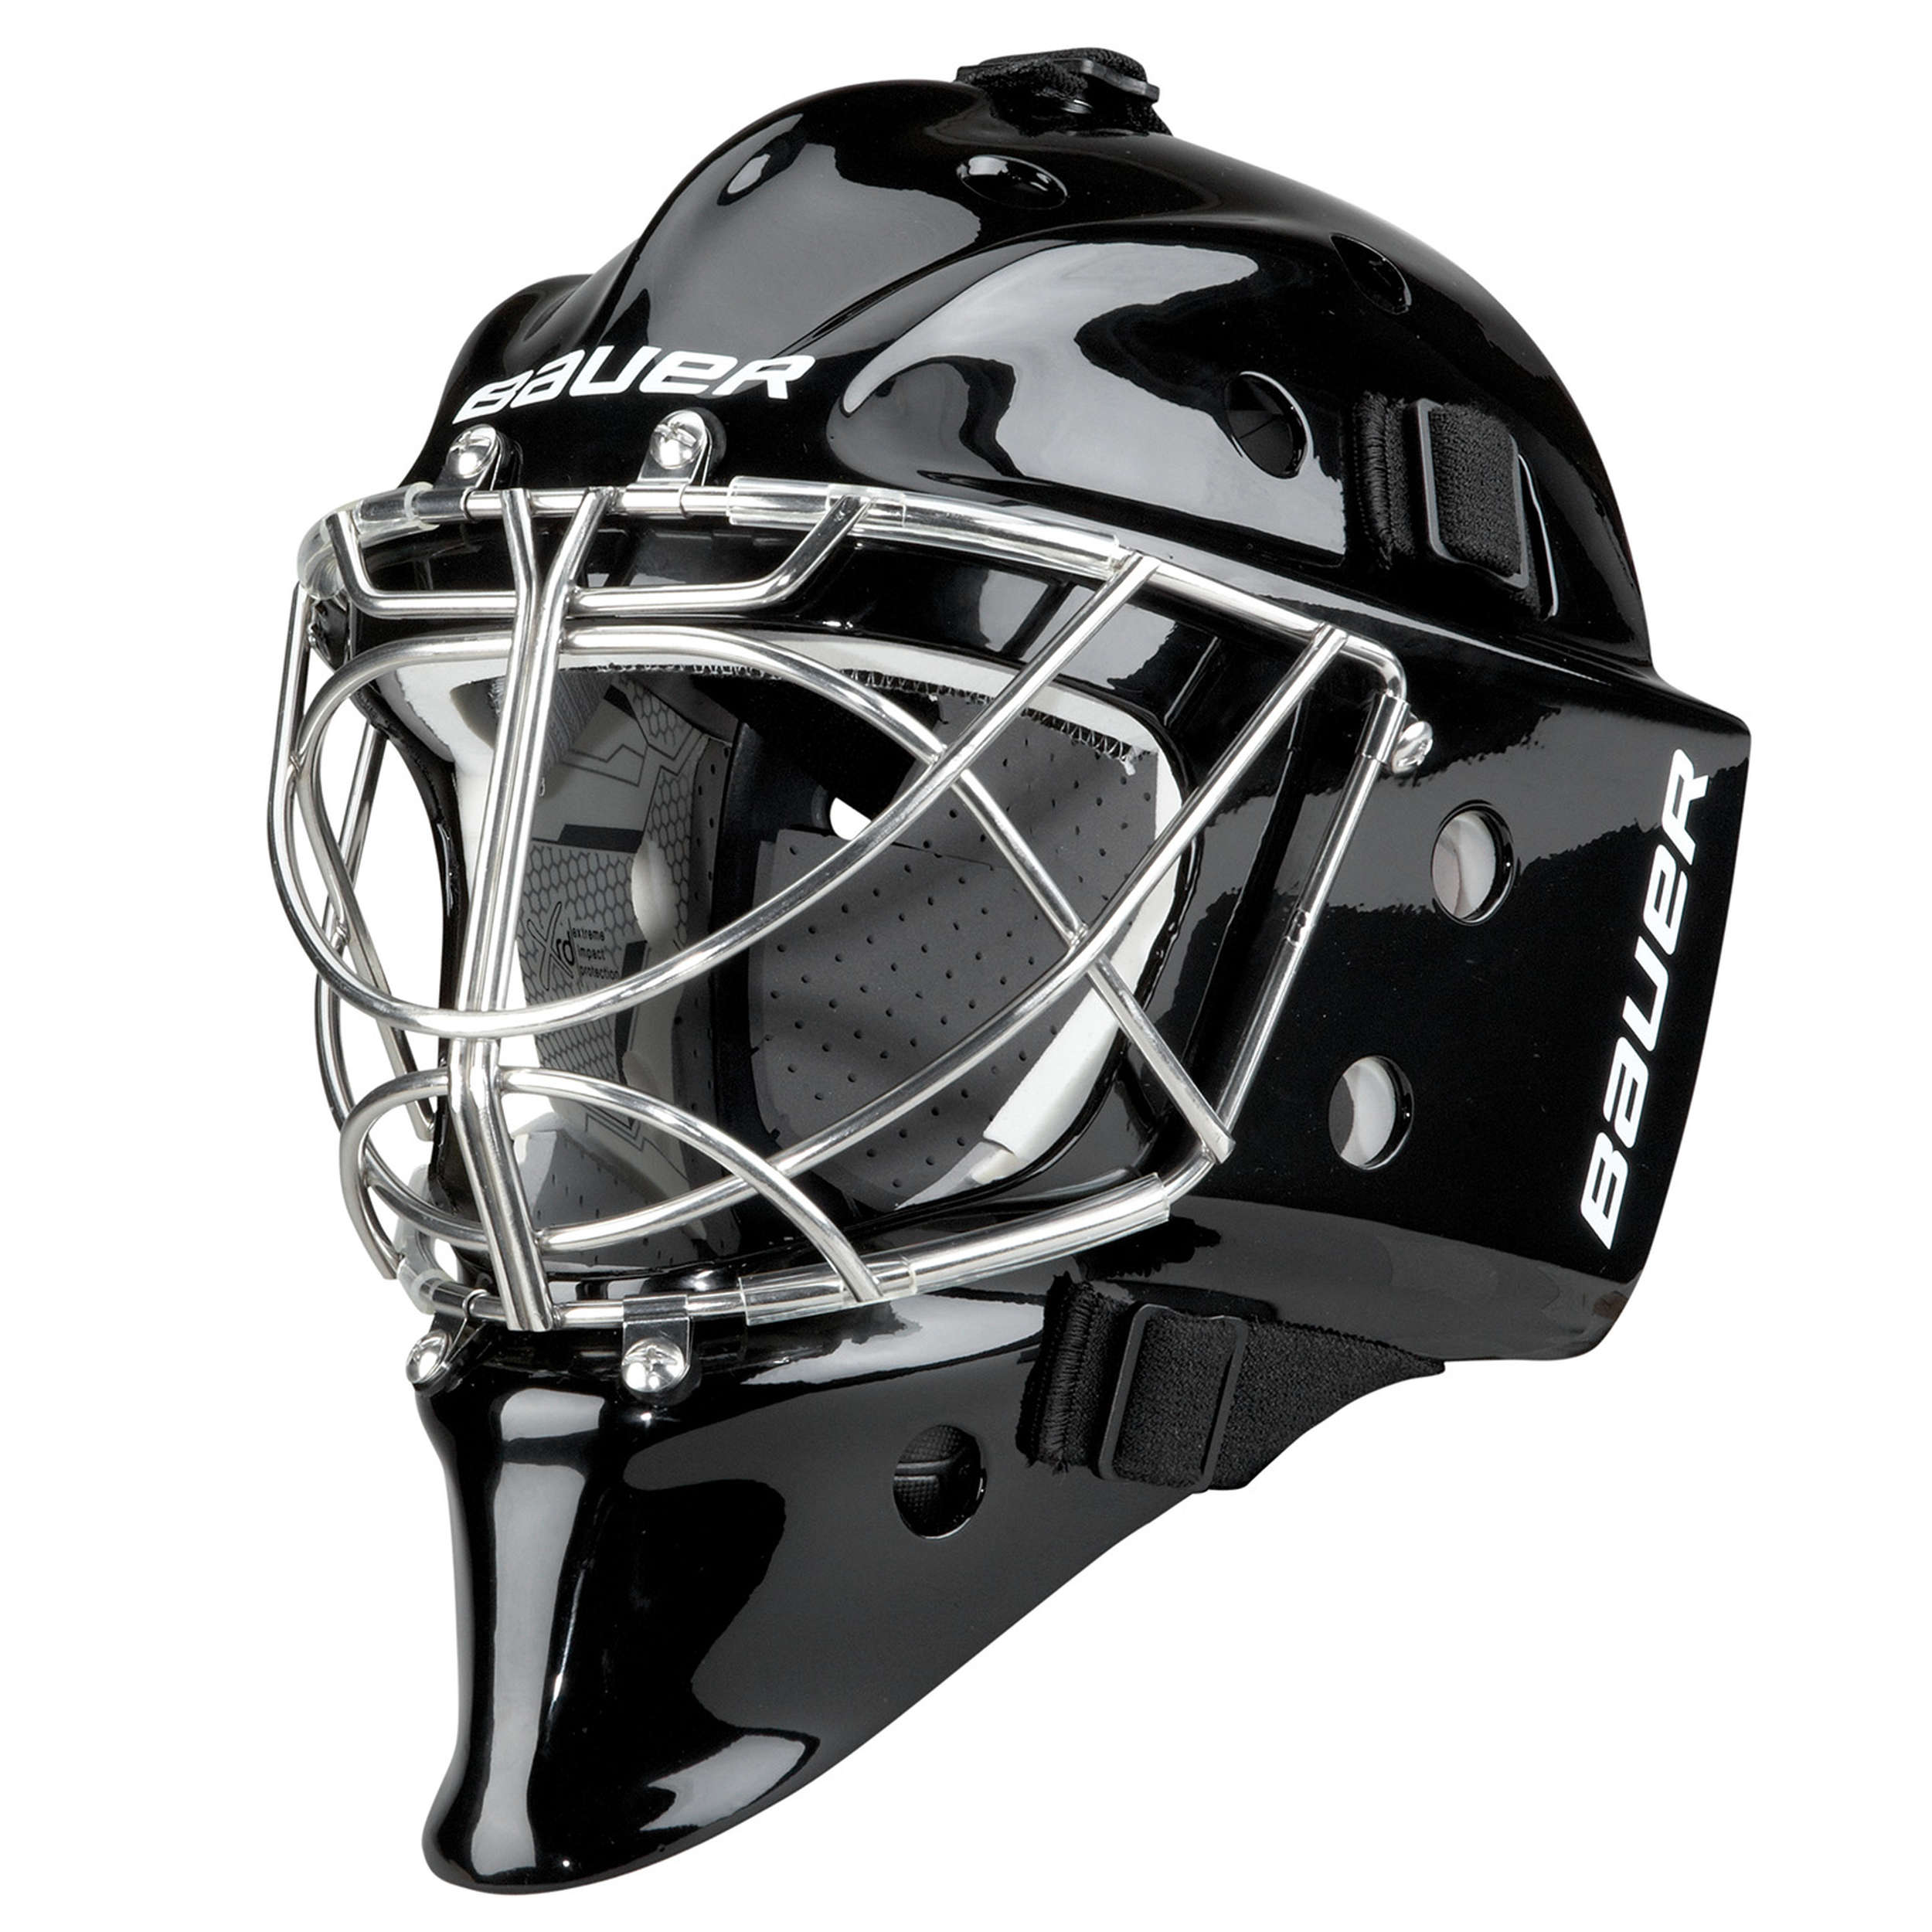 Маска хоккейная bauer. Бауэр 950 вратарский шлем. Вратарский шлем хоккейный Bauer 950. Хоккейный шлем для вратаря Бауэр. Шлем хоккейный вратарский черный Bauer.